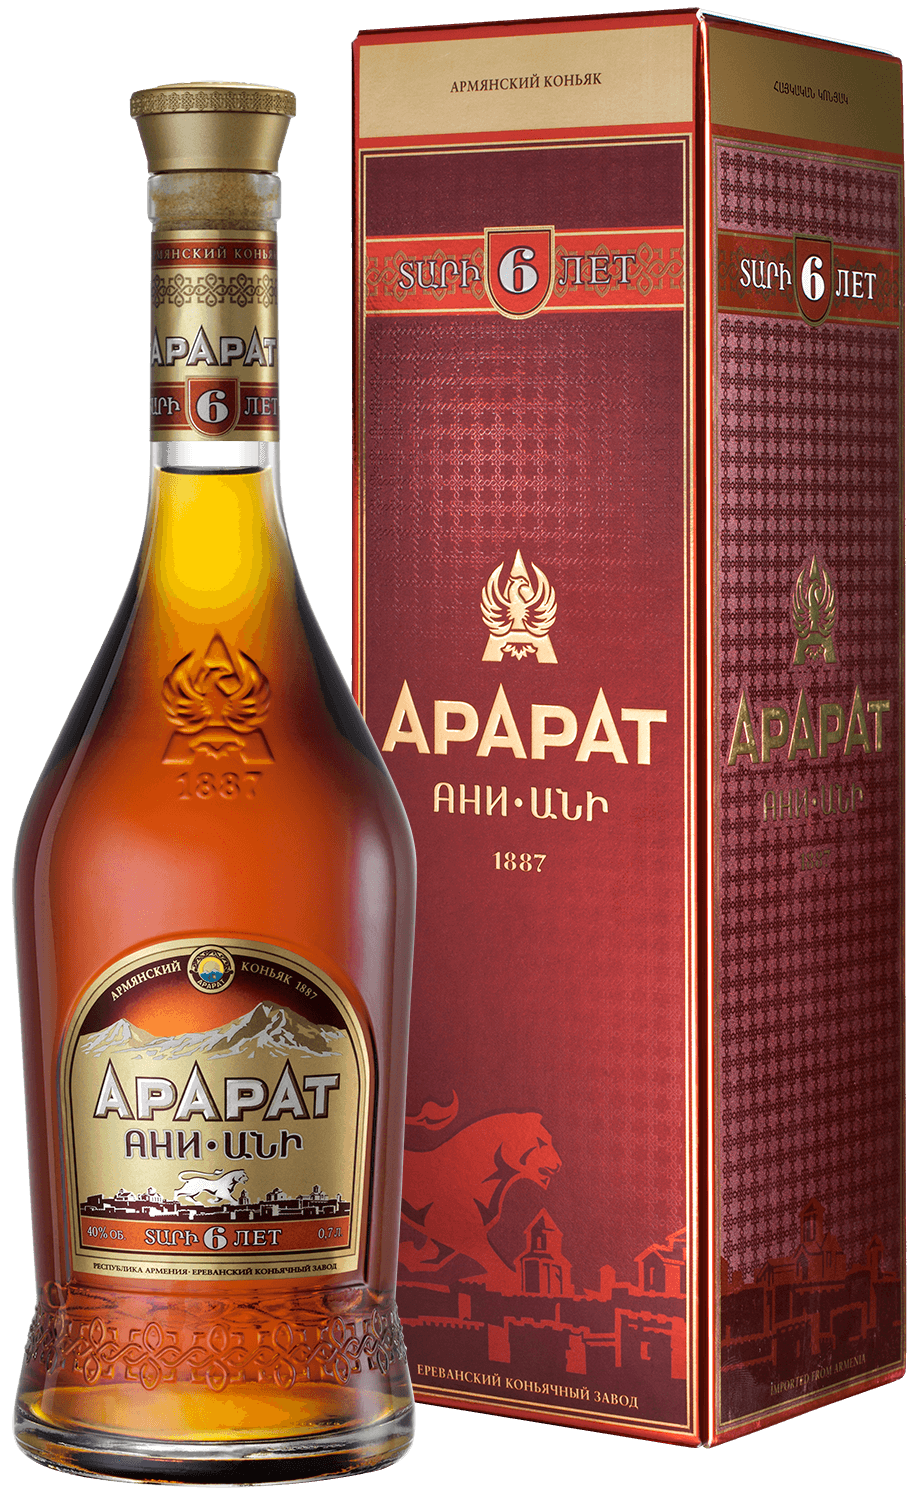 ararat otborny armenian brandy 7 y o gift box ARARAT Ani Armenian Brandy 6 y.o. (gift box)